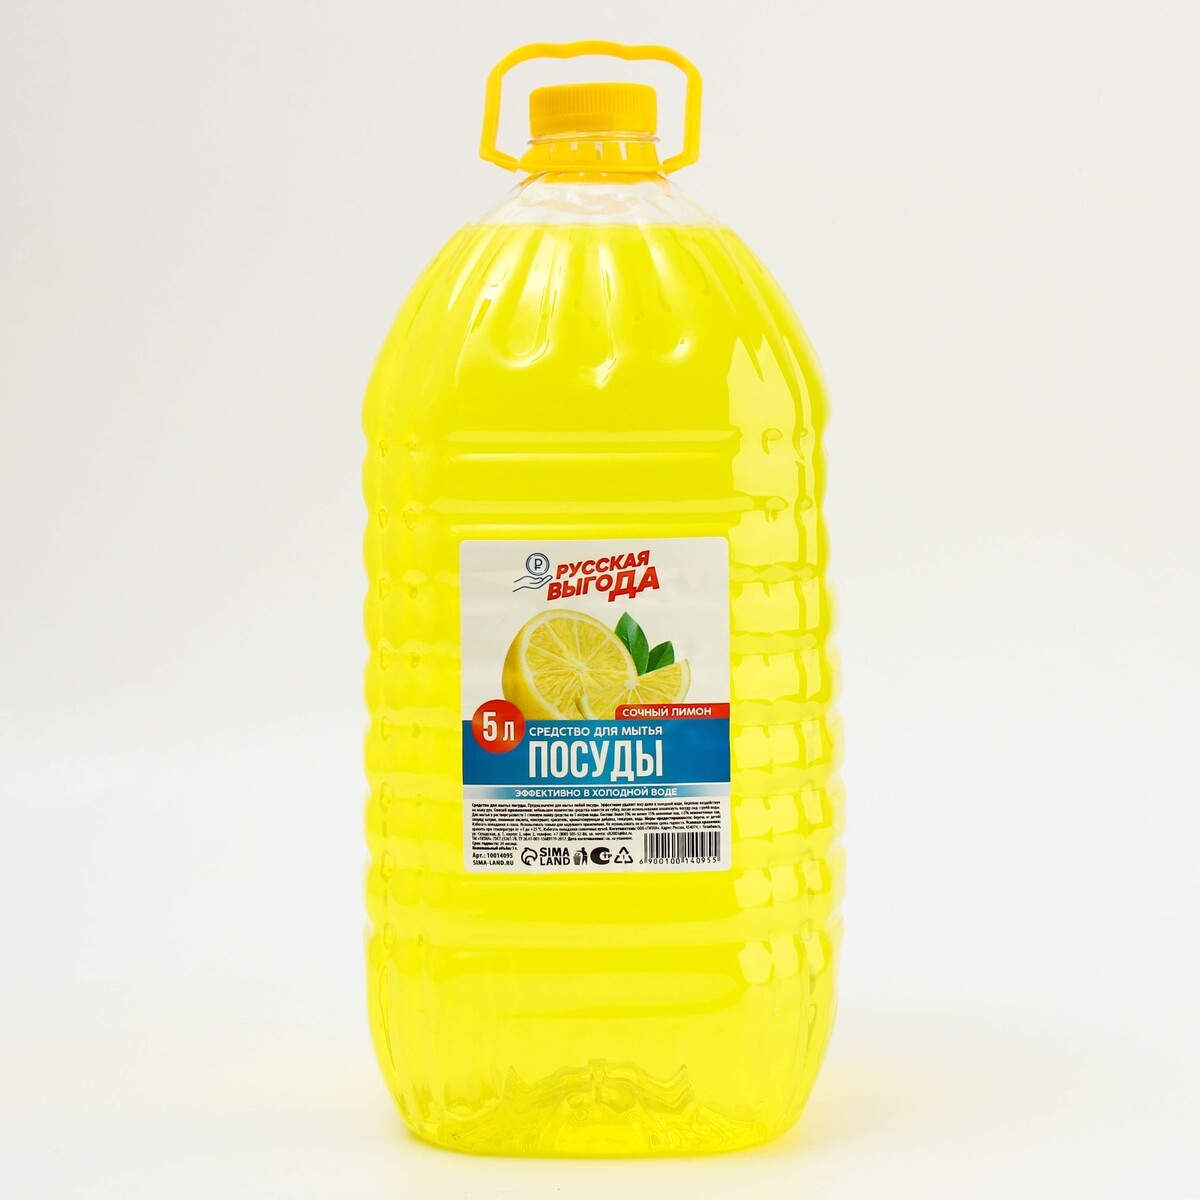 Средство для мытья посуды, аромат лимон, 5 л, русская выгода средство для мытья посуды softi clean лимон и лемонграсс 500 мл